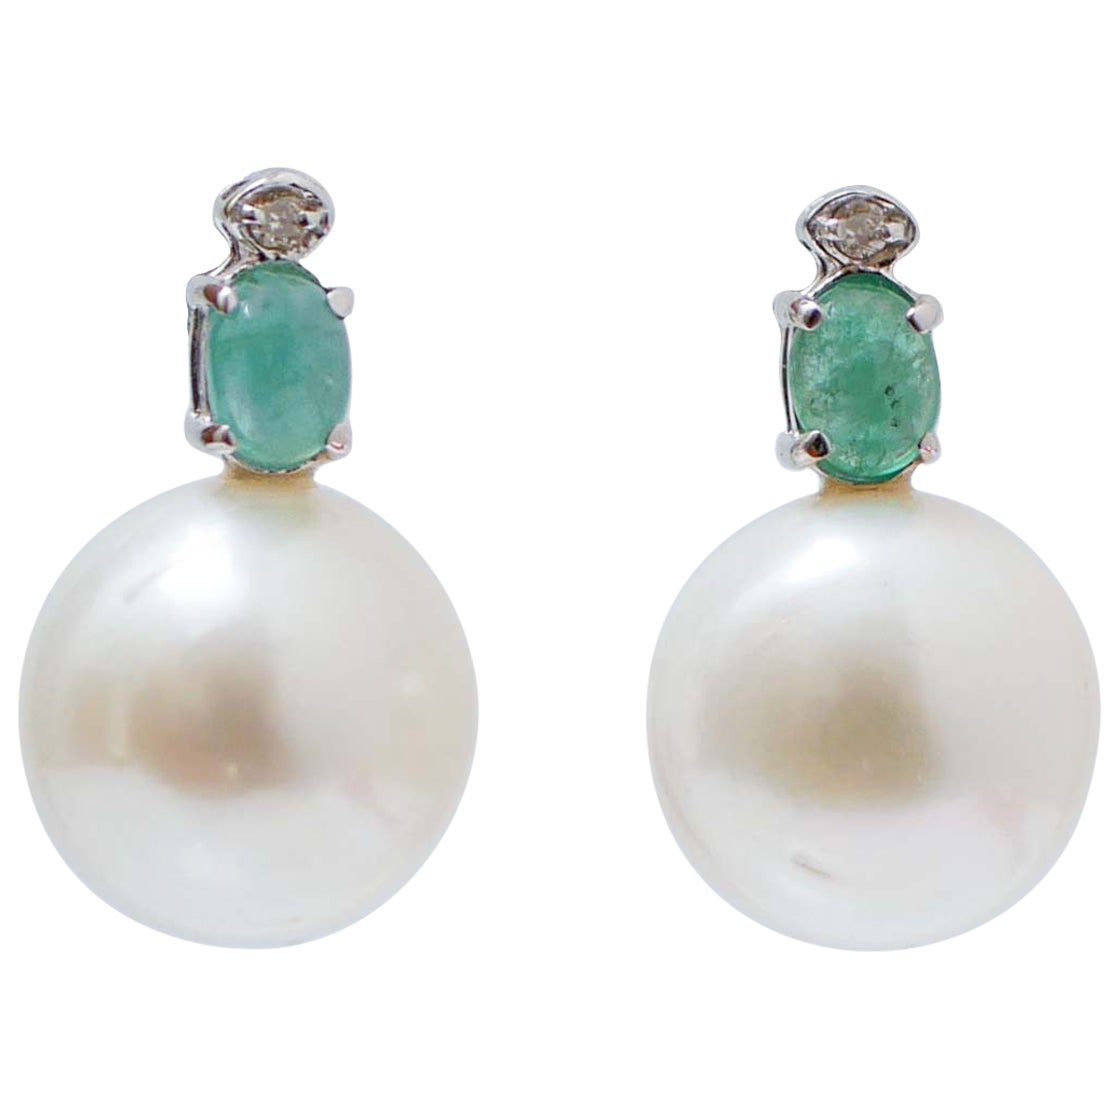 White Pearls, Emeralds, Diamonds, 14 Karat White Gold Earrings.